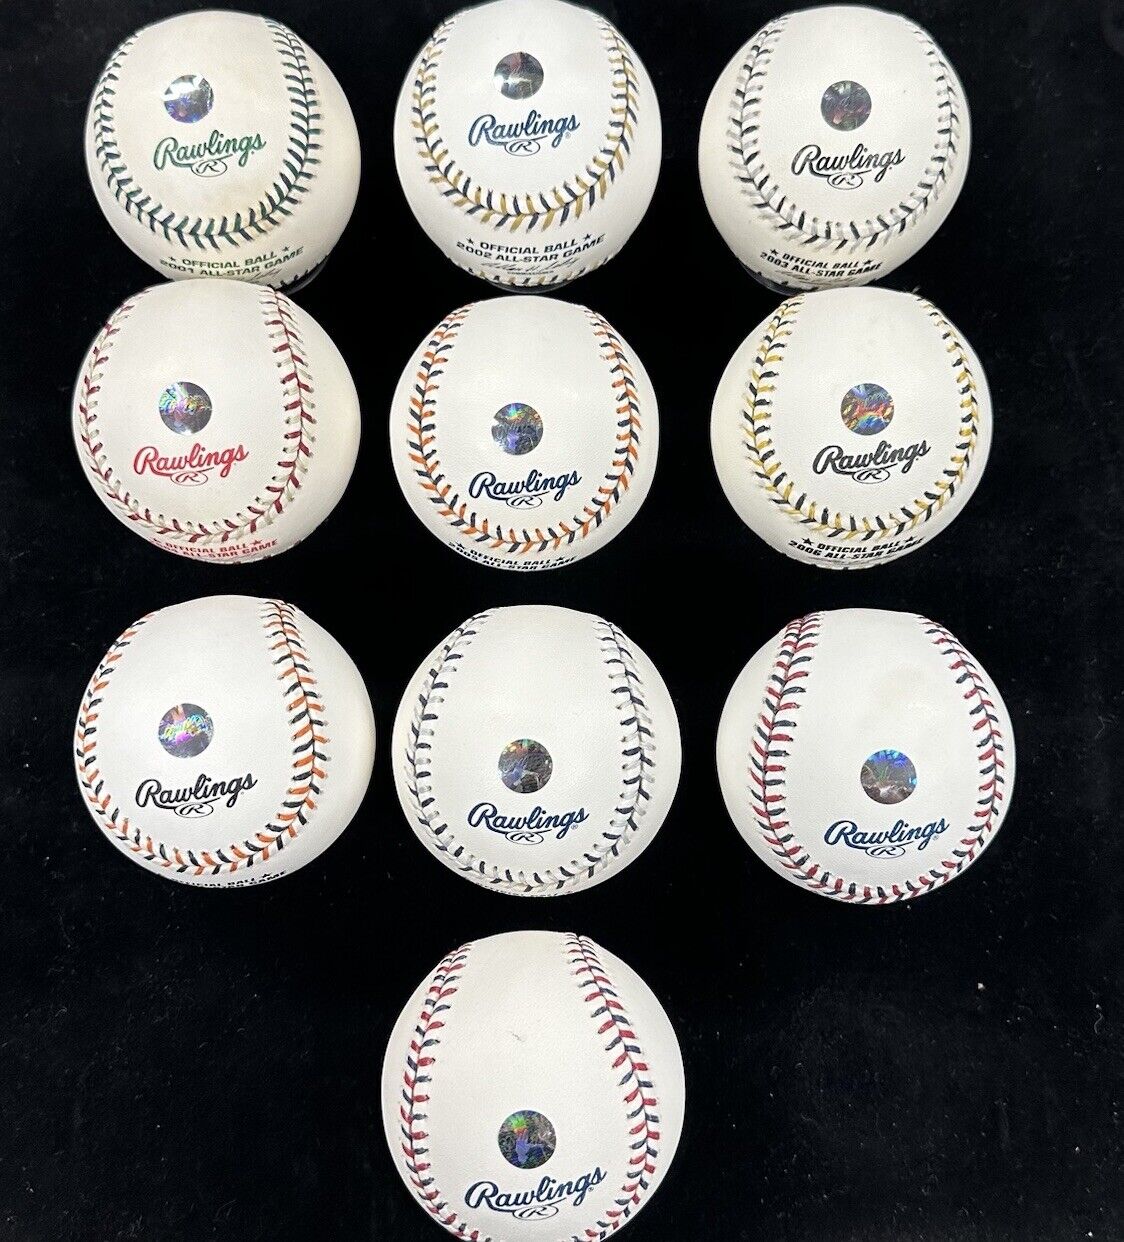 Ichiro Suzuki 2001-2010 Signed All Star Game Baseball Set Ichiro Hologram